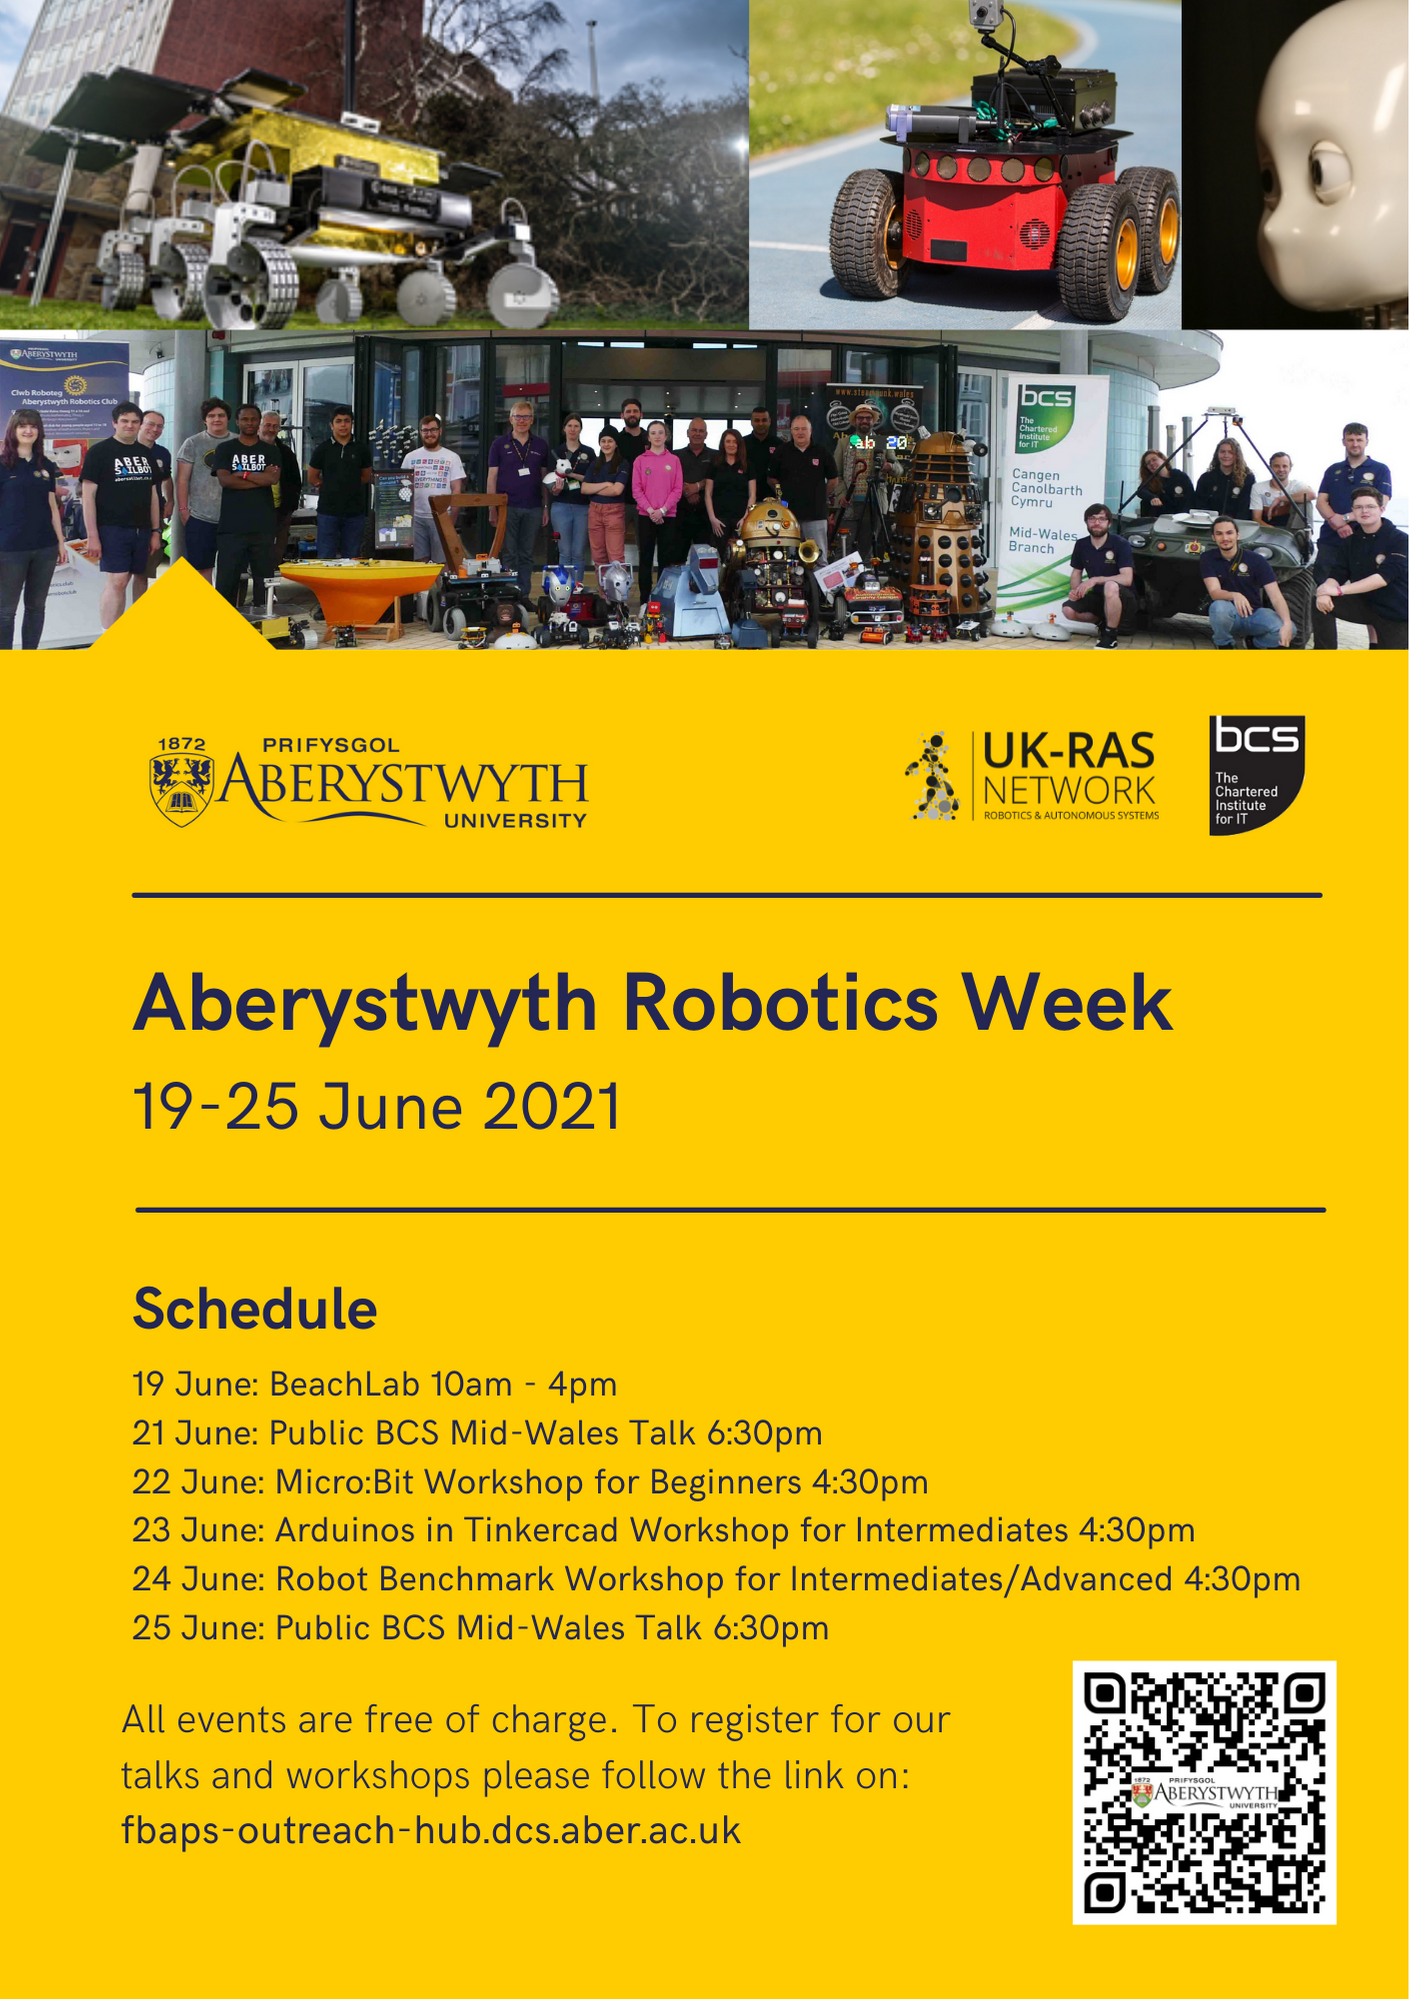 Aberystwyth Robotics Week Poster. 19-25 June 2021. Schedule: 19th June - BeachLab, 21st June - BCS talk, 22nd June - Micro:Bit workshop, 23rd June - Tinkercad Arduino workshop, 24th June - Robot Benchmark workshop, 25th June - BCS Talk